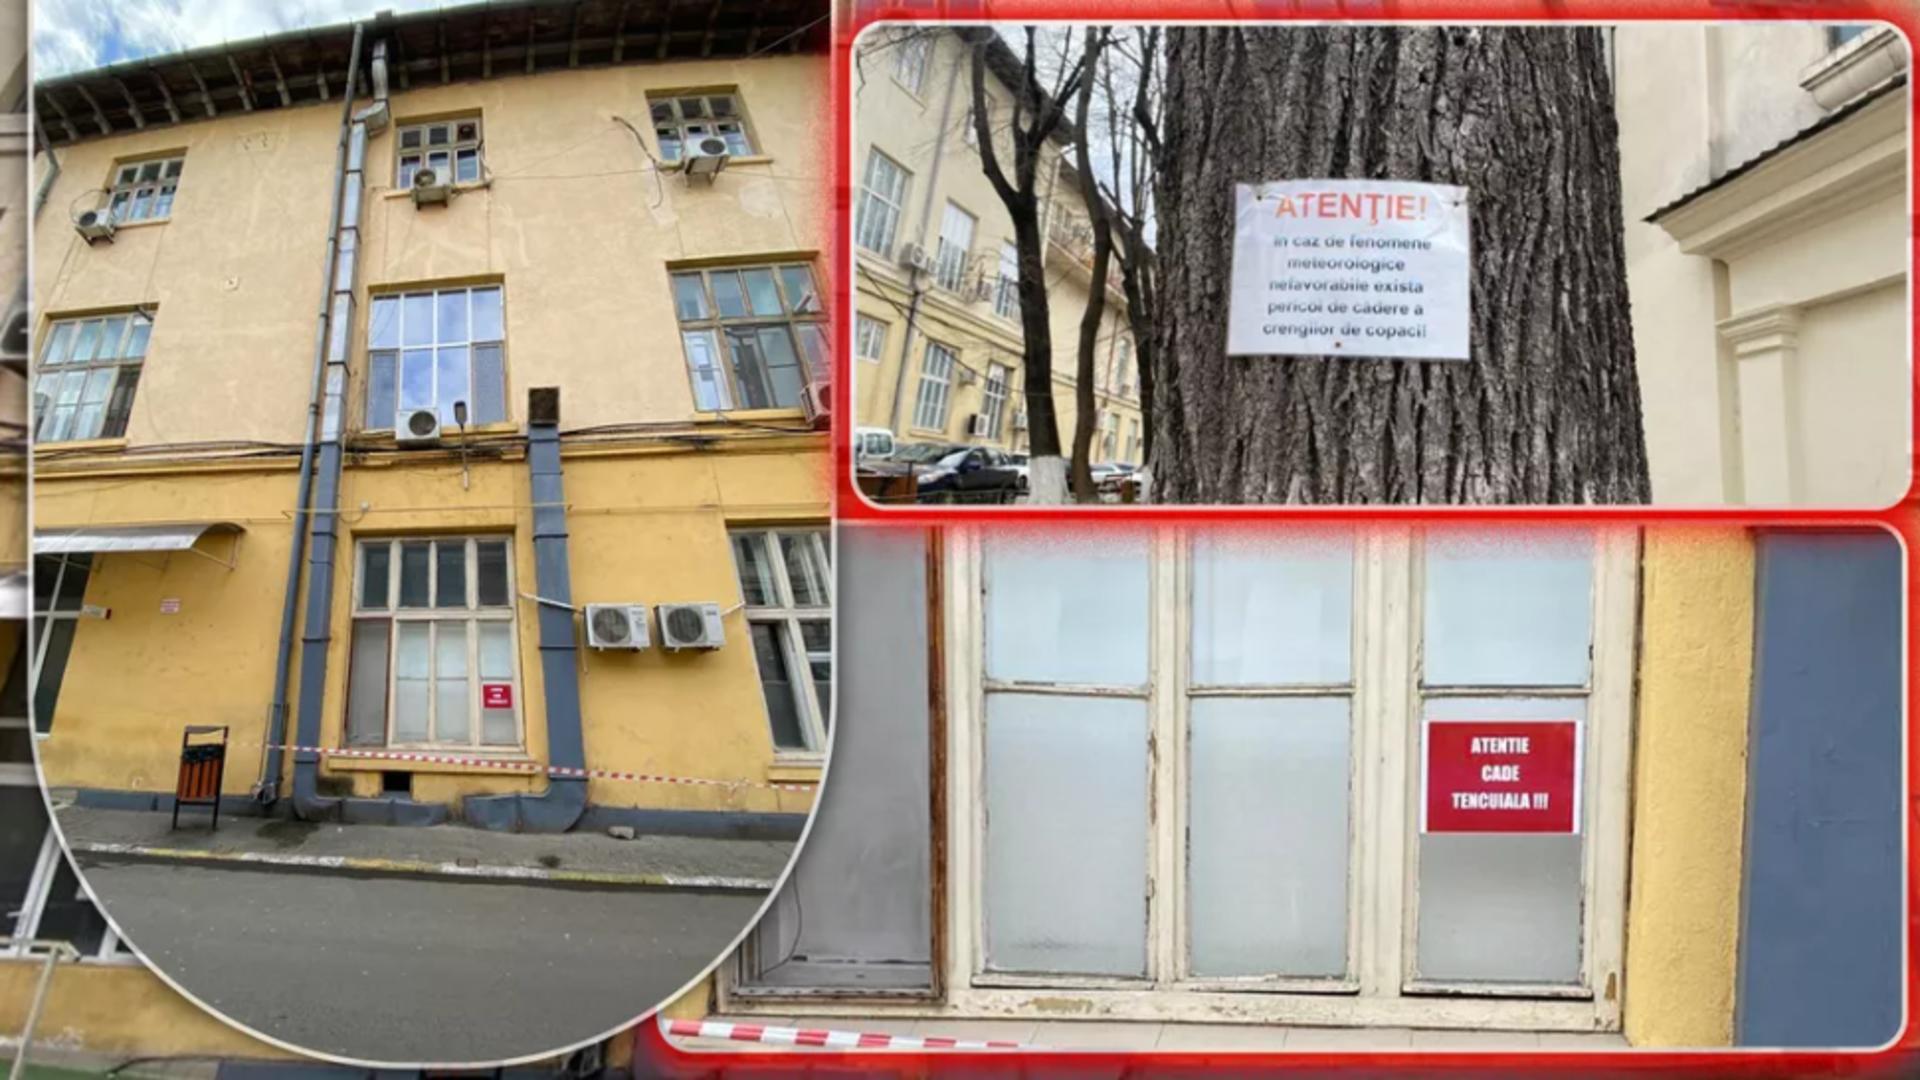 Spital cu capcane pentru pacienți și vizitatori. Ce riscă cei care ajung la cel mai mare spital din Iași?